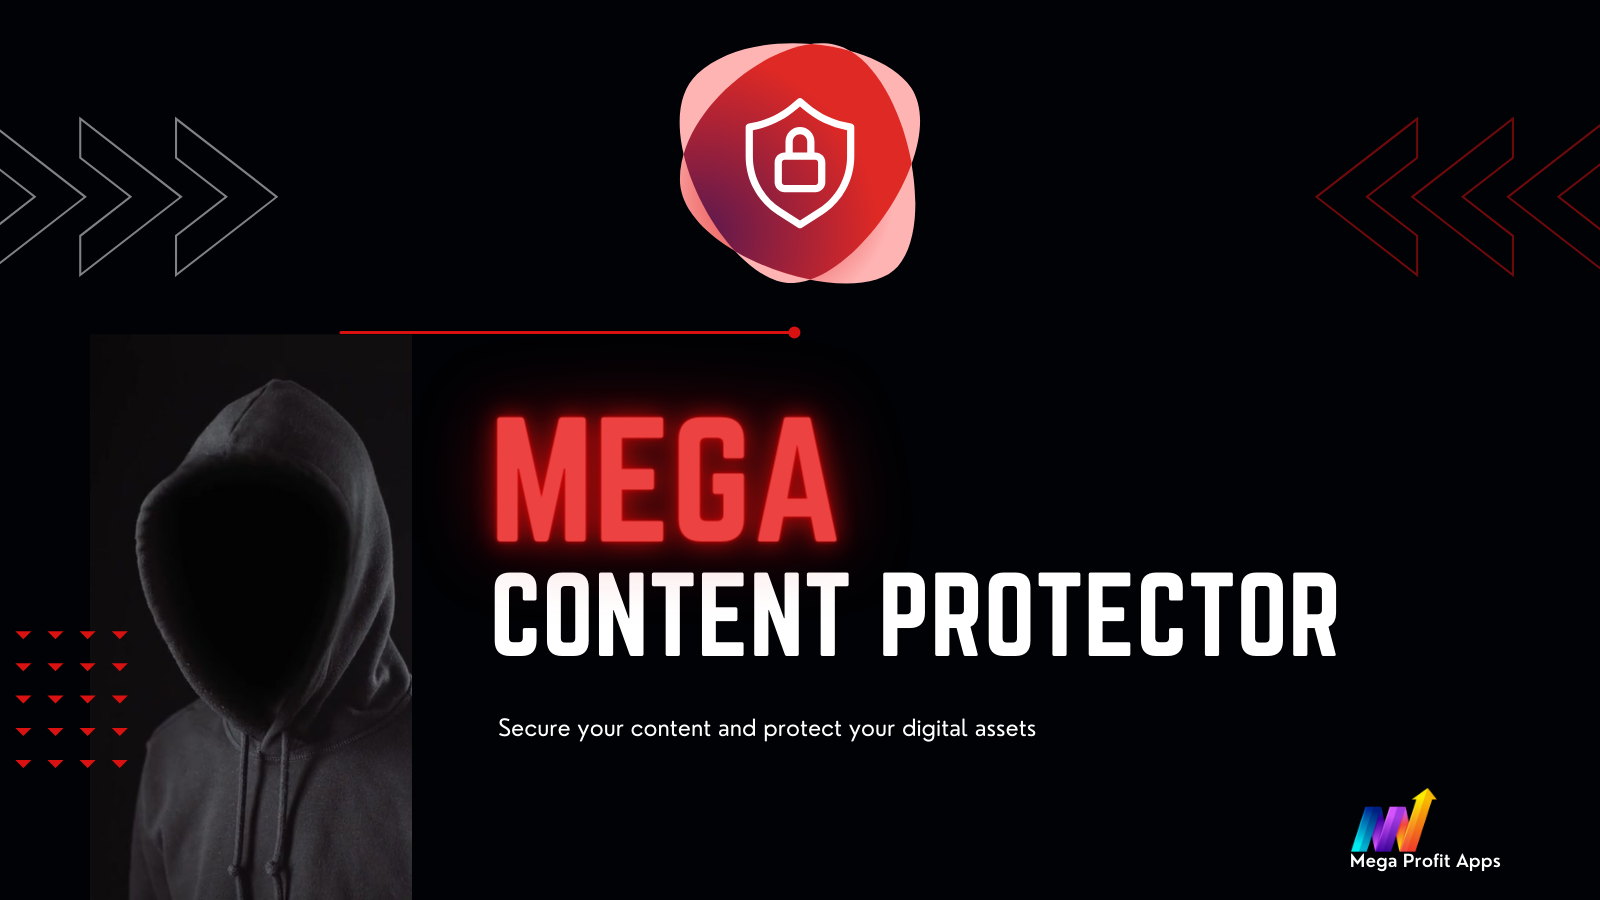 Mega Content Protector - Skydda ditt hårda arbete och kreativitet